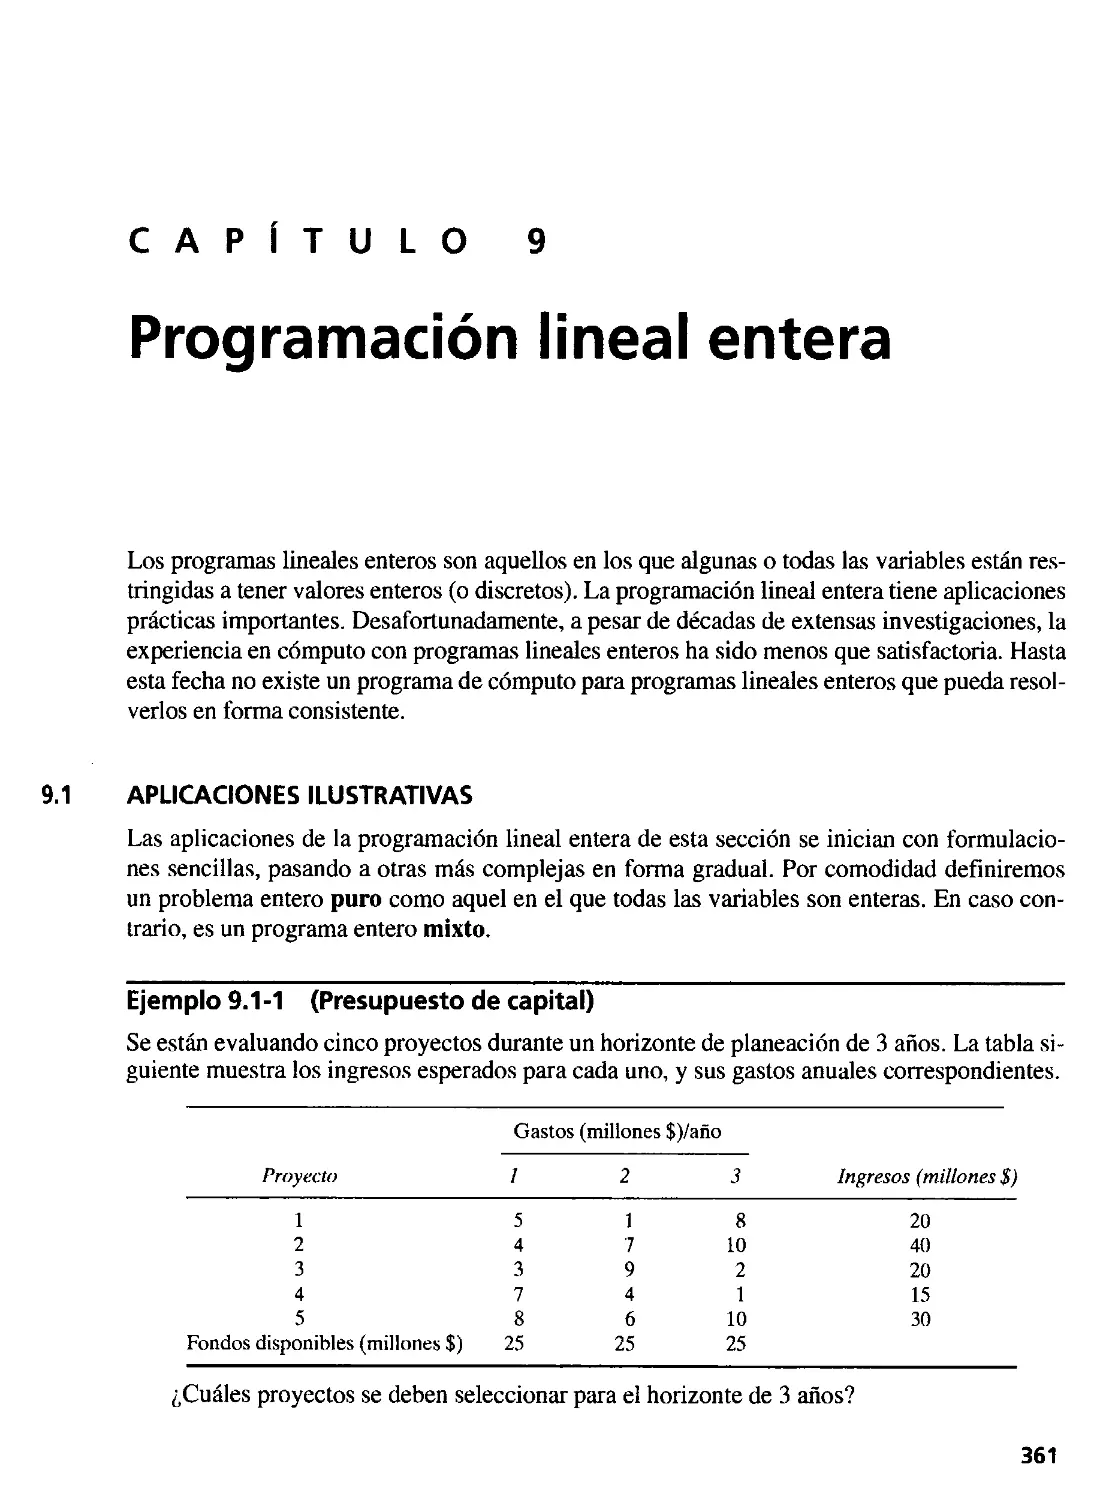 9. Programación lineal entera